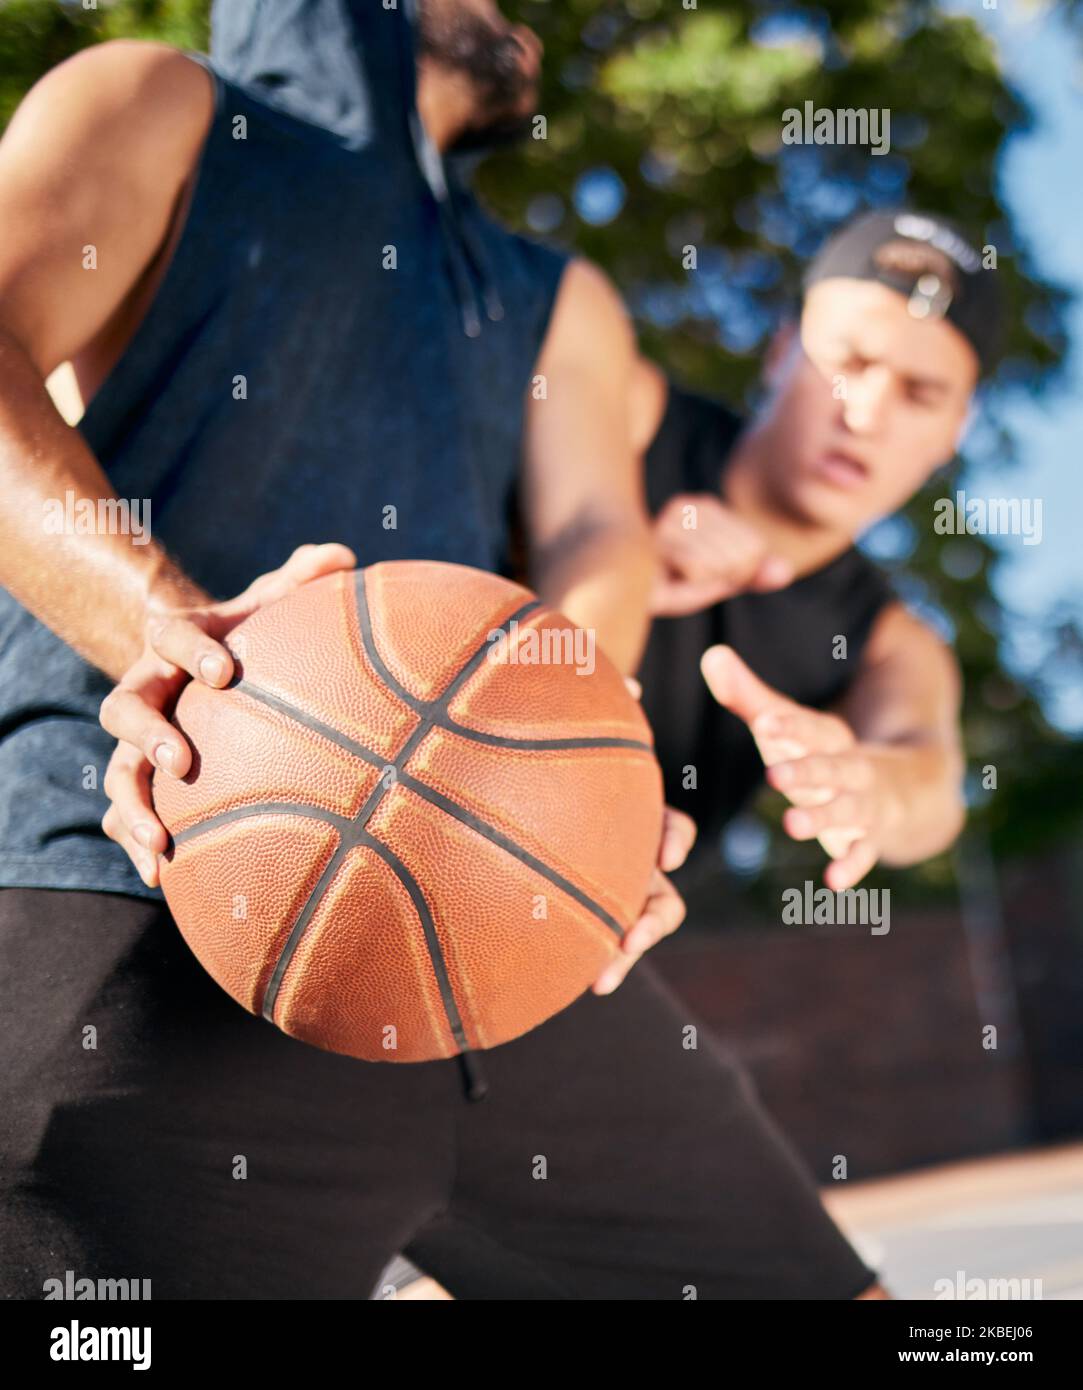 Joueur de basket-ball, dribble carry ball et jouer sur le terrain de basket-ball pour la remise en forme, la guérison et l'entraînement. Amis de basket-ball, sports d'été en plein air et Banque D'Images